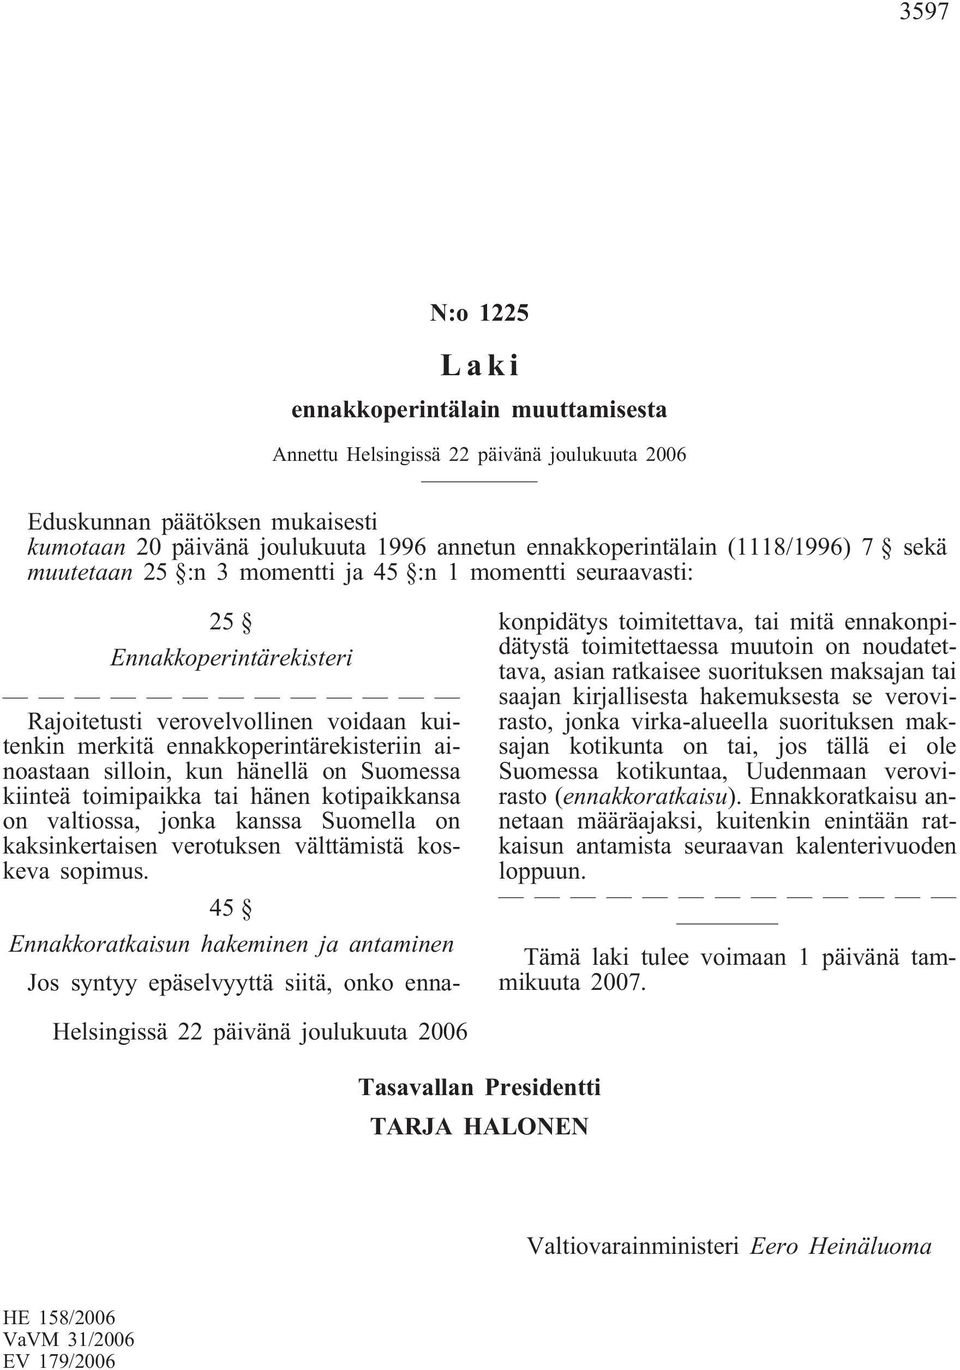 valtiossa, jonka kanssa Suomella on kaksinkertaisen verotuksen välttämistä koskeva sopimus.